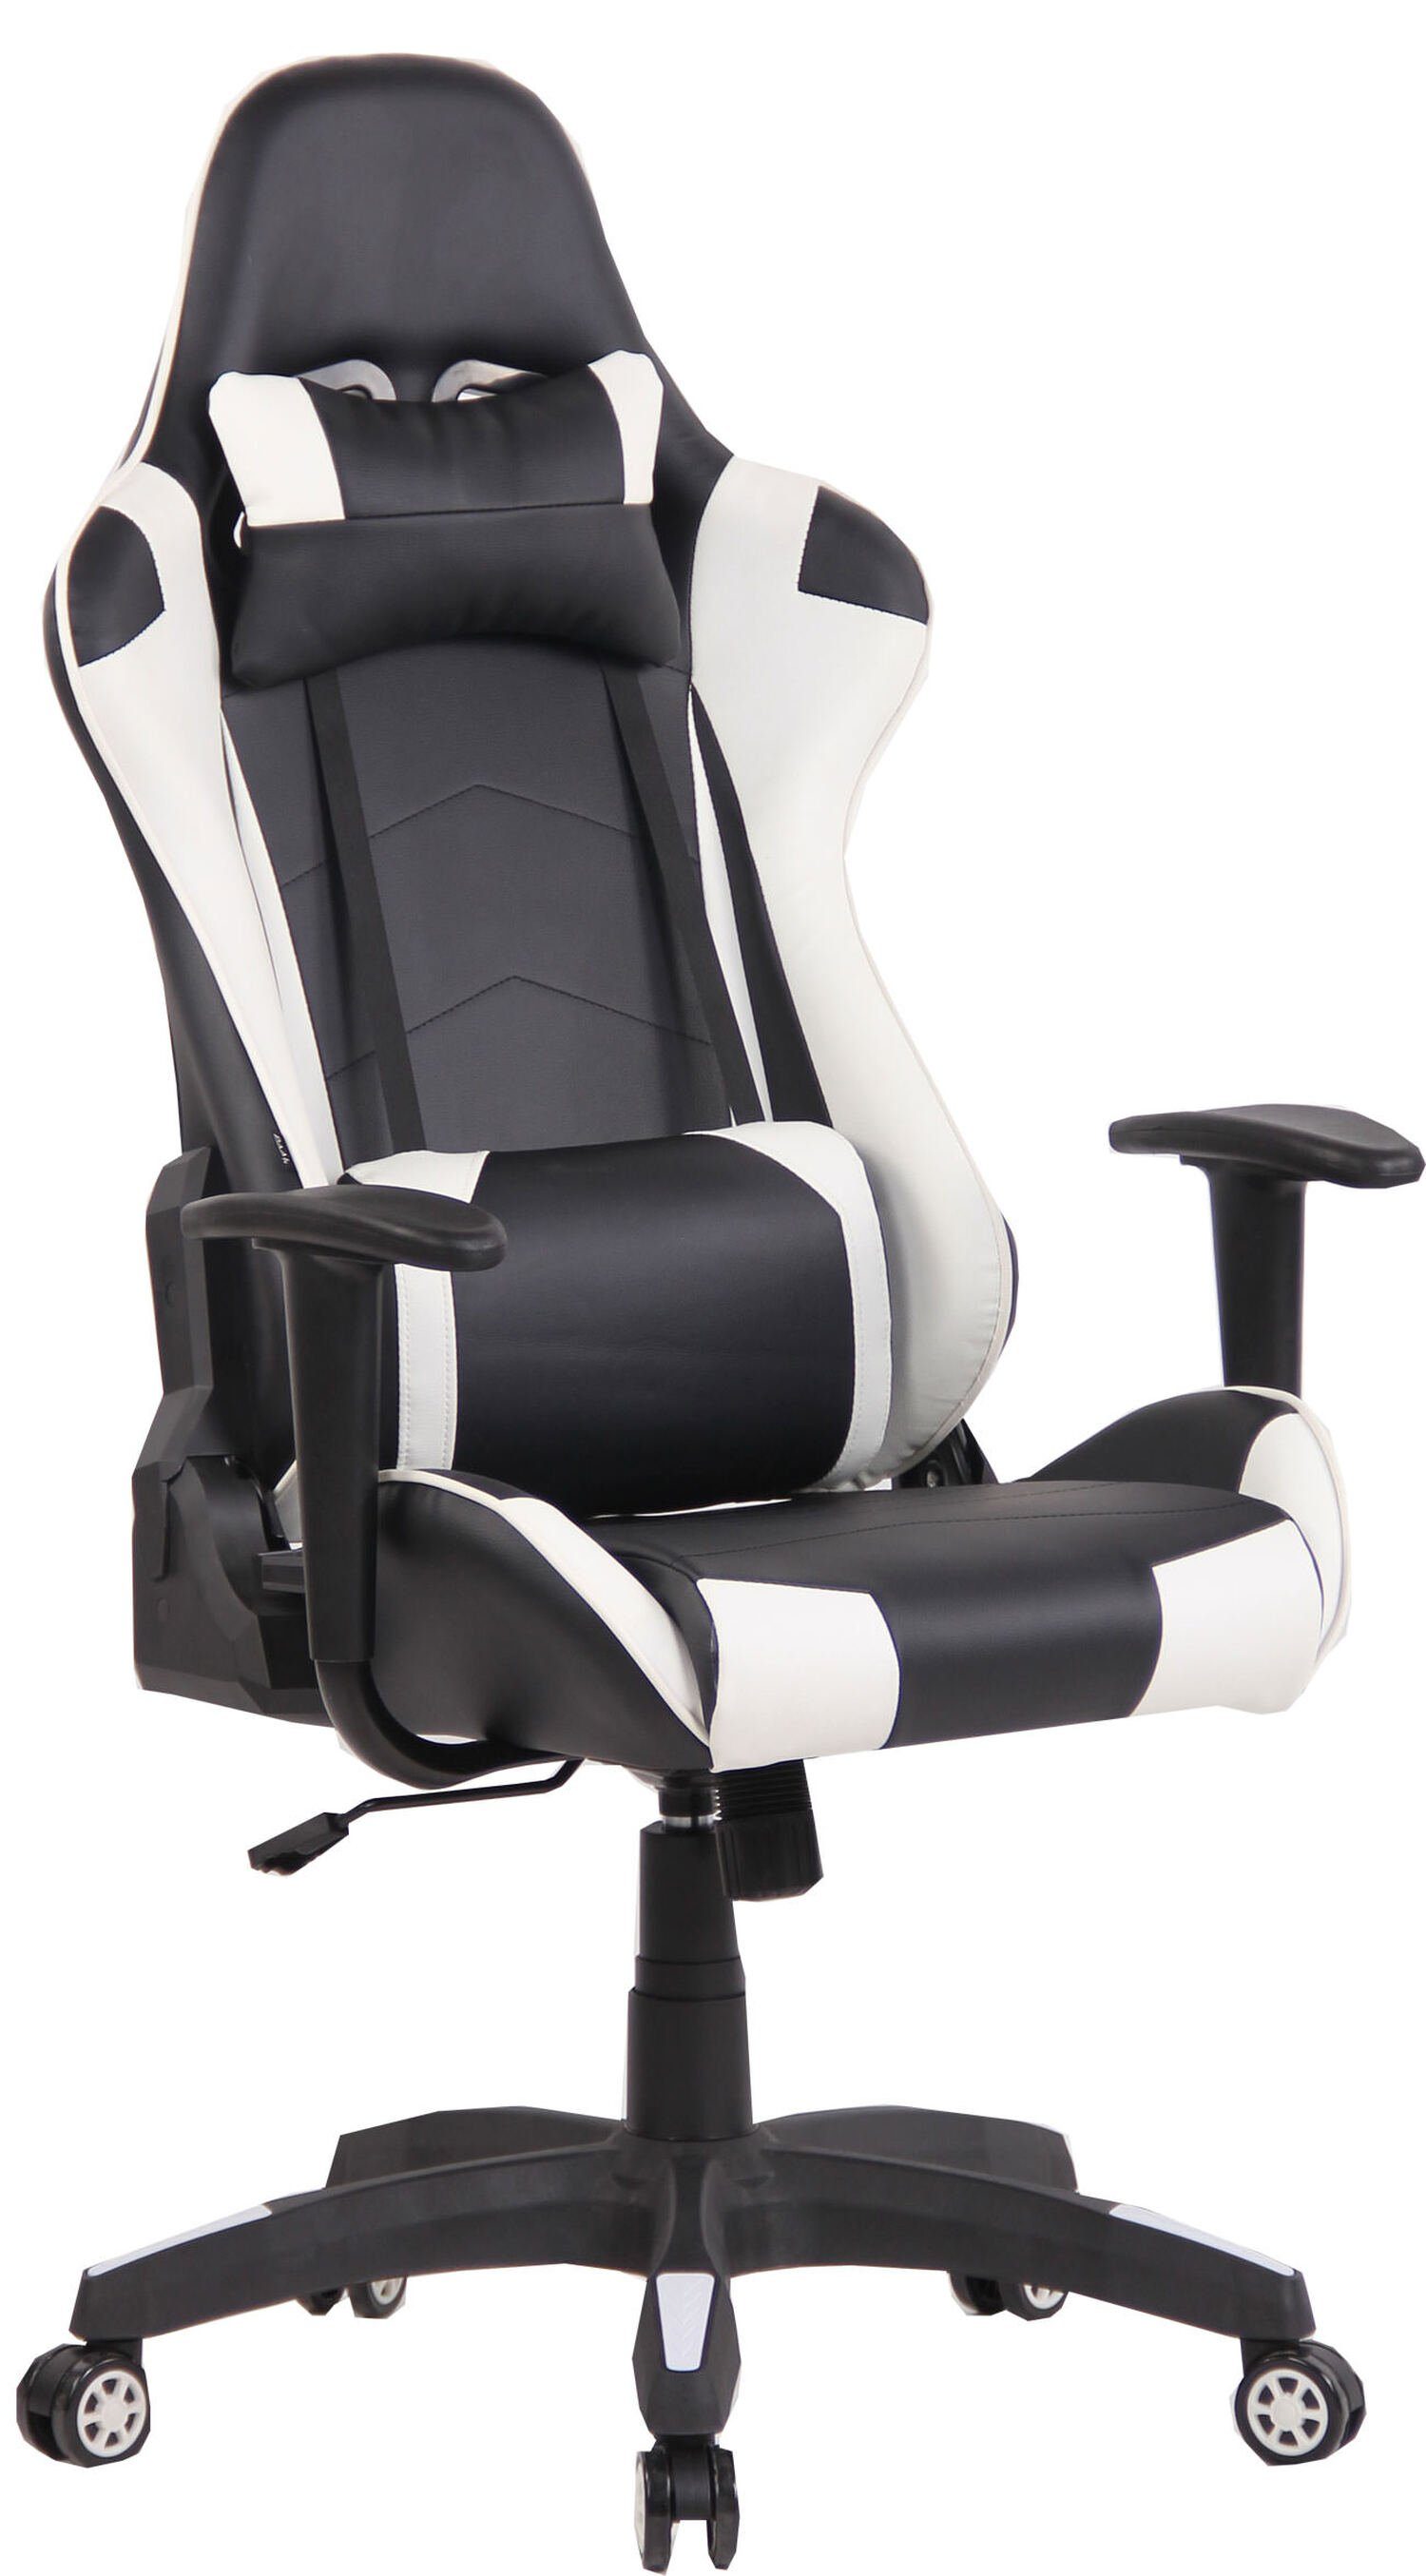 TPFLiving Gaming-Stuhl Mirage mit bequemer Rückenlehne - höhenverstellbar und 360° drehbar (Schreibtischstuhl, Drehstuhl, Gamingstuhl, Racingstuhl, Chefsessel), Gestell: Kunststoff schwarz - Sitzfläche: Kunstleder schwarz/weiß